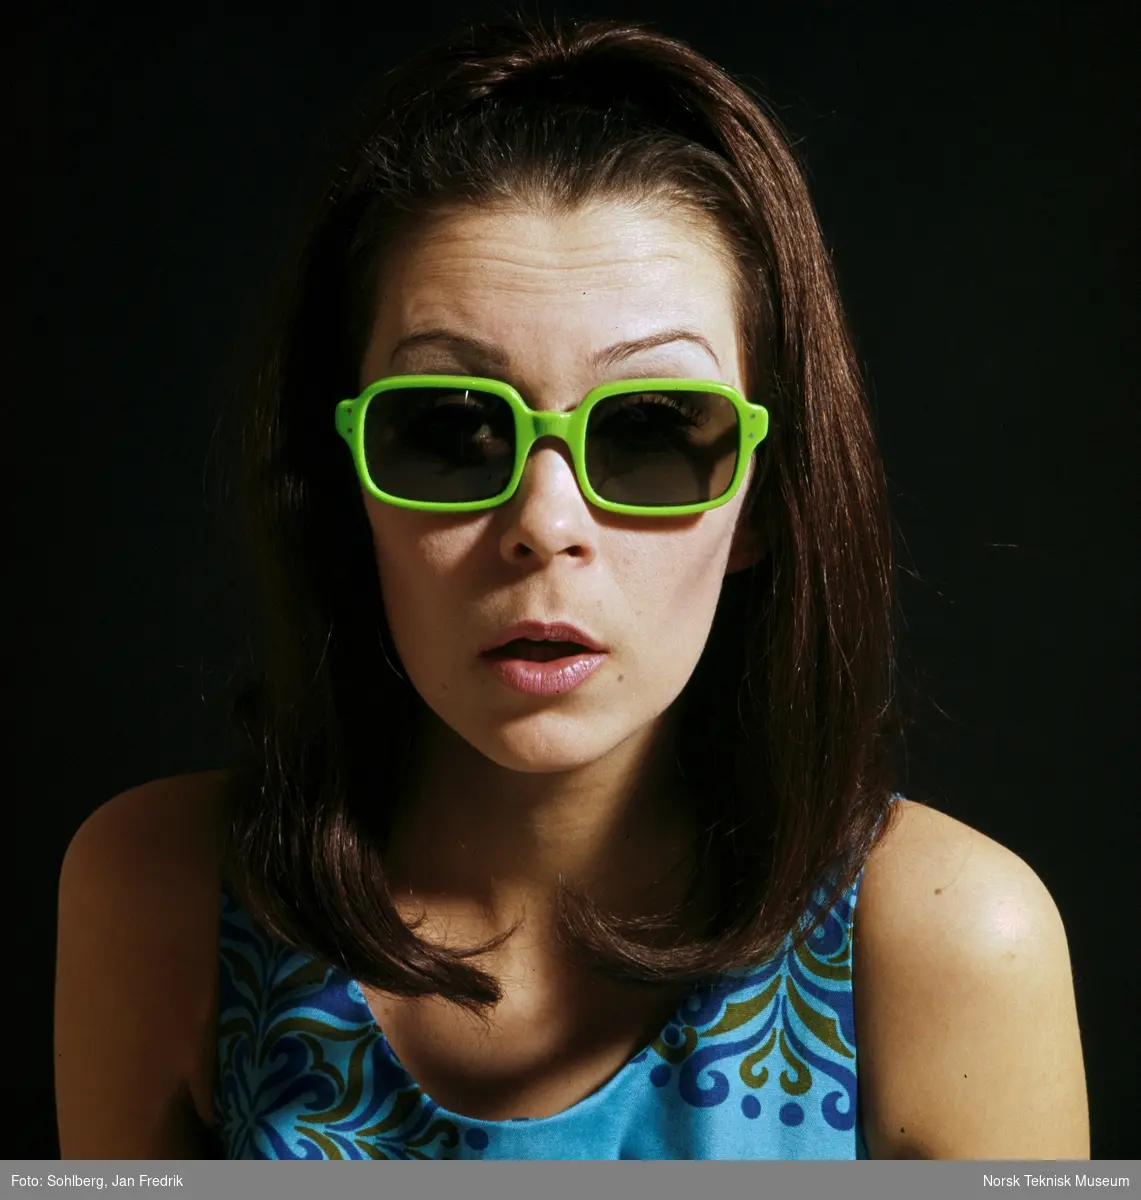 En kvinnelig modell viser fram tidenssolbrillemote. Hun har langt hår hengende løst. Hun har grønne solbriller. Hippie-stil.